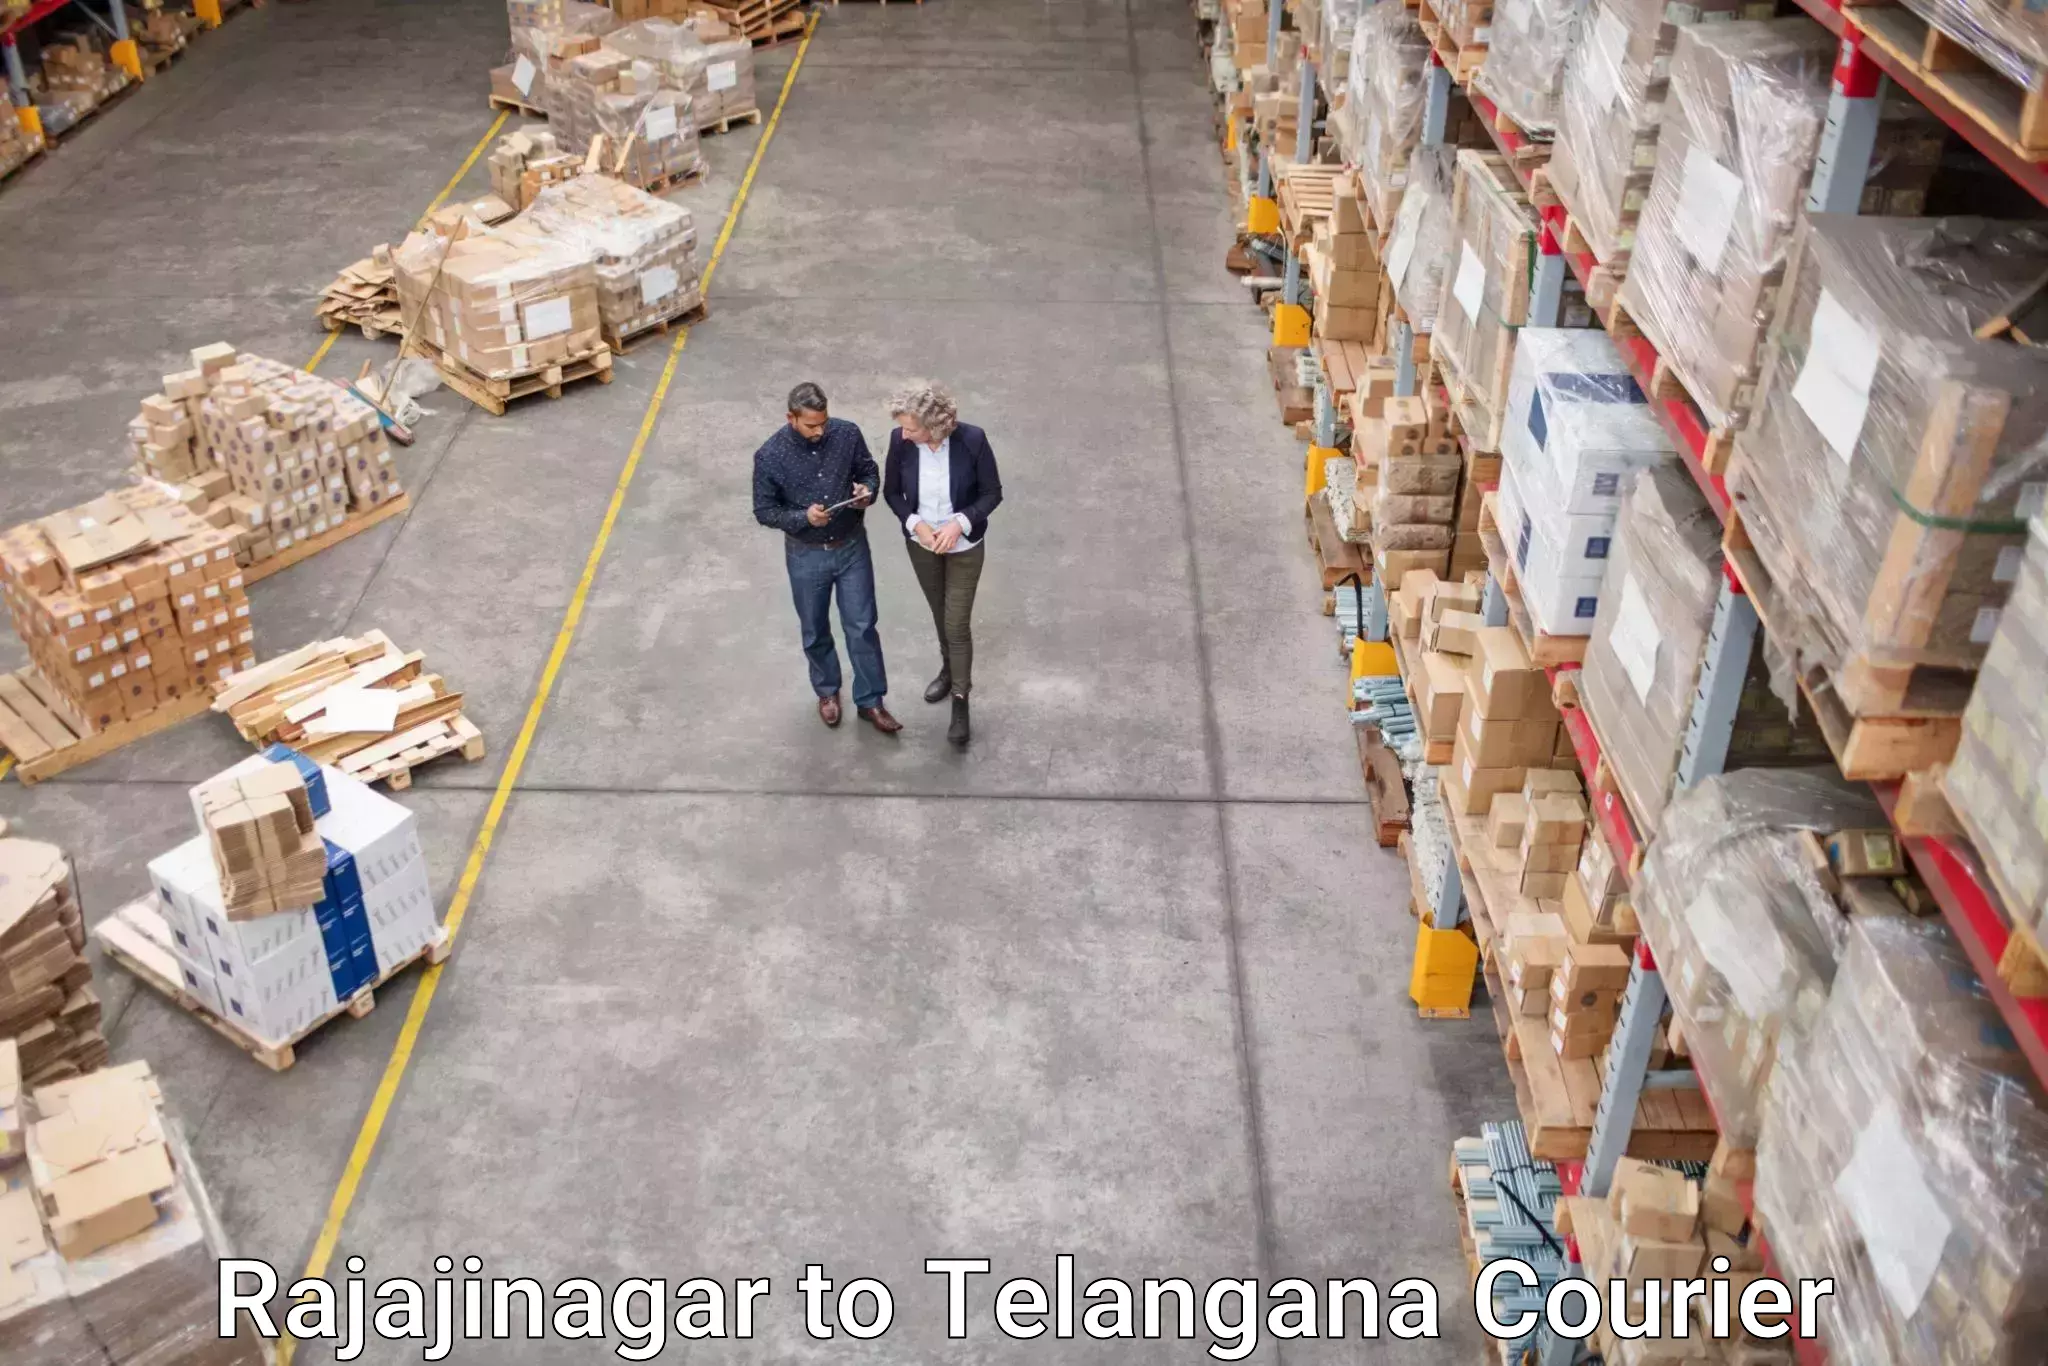 Global logistics network Rajajinagar to Alair